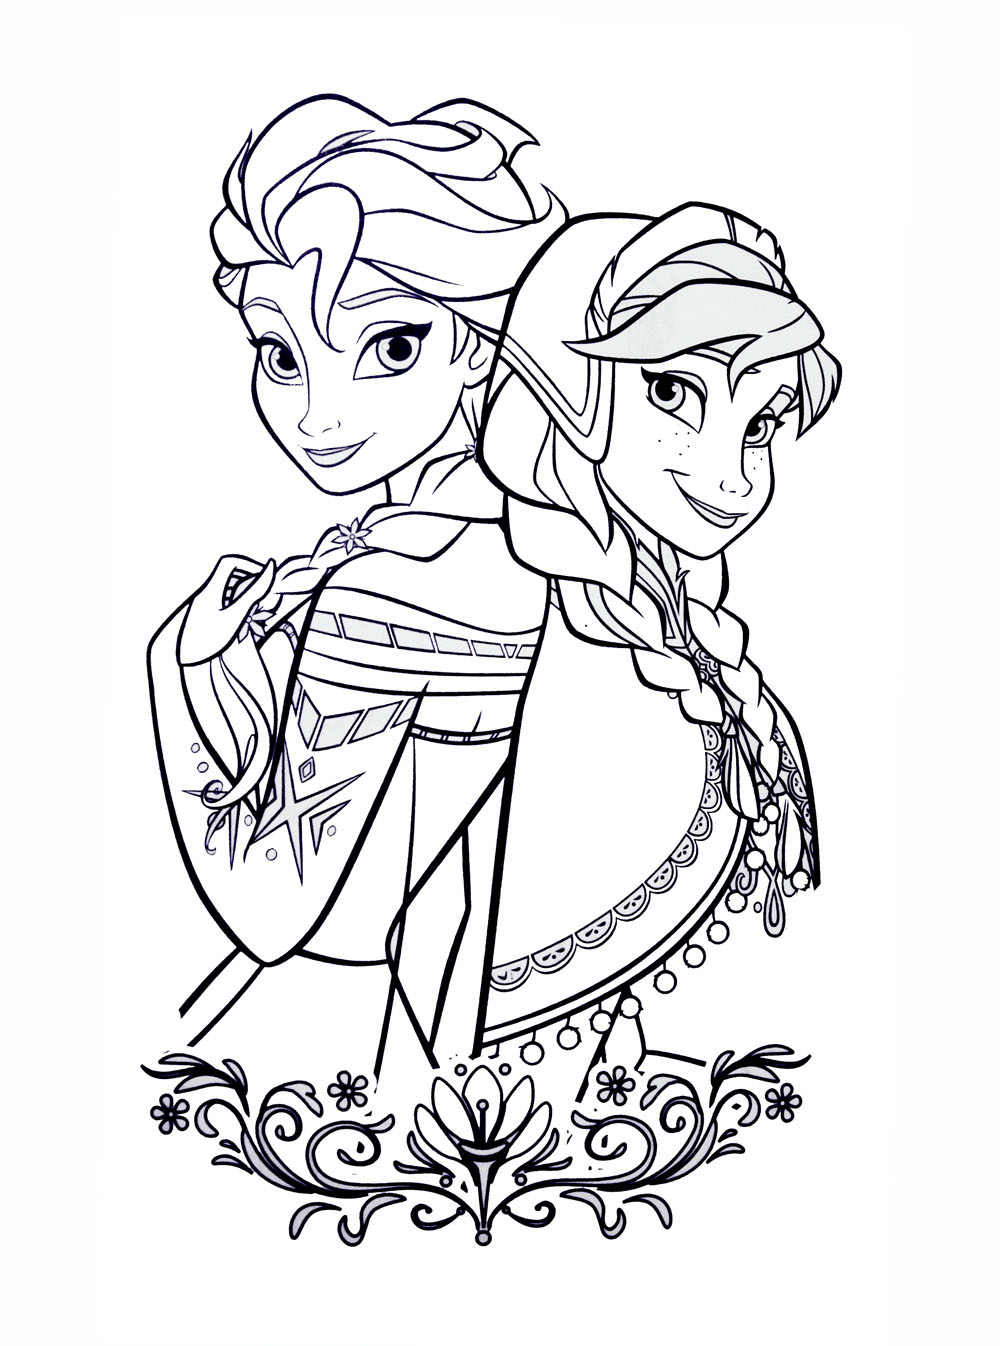 Tranh tô màu Elsa và Anna lúc nhỏ